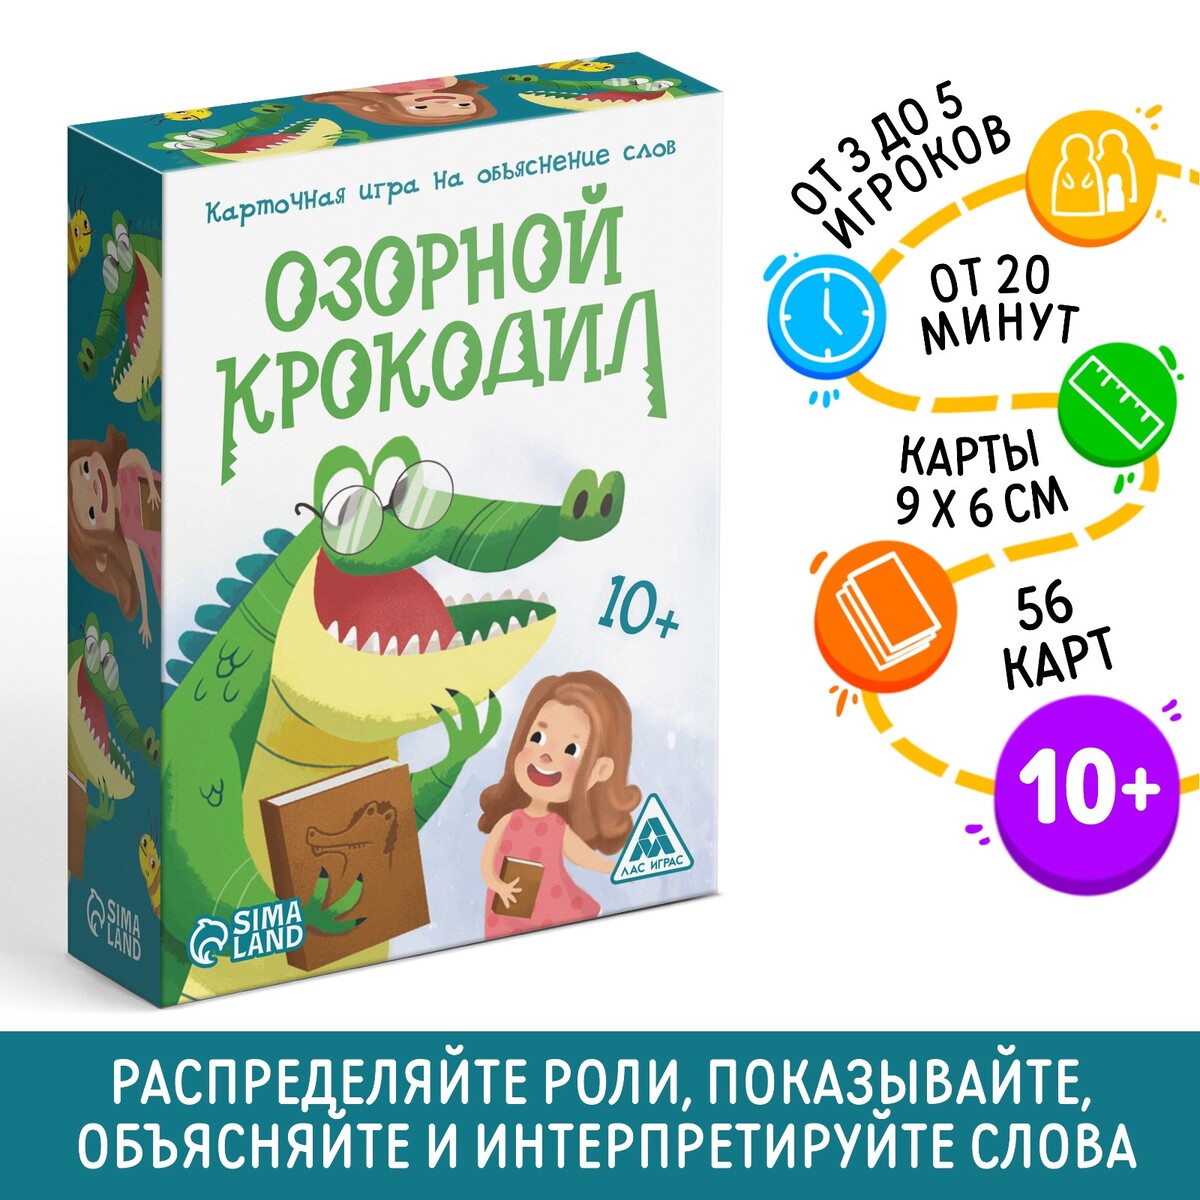 Карточная игра на объяснение слов карточная игра doobl image развивающая память обычные карты динозавры